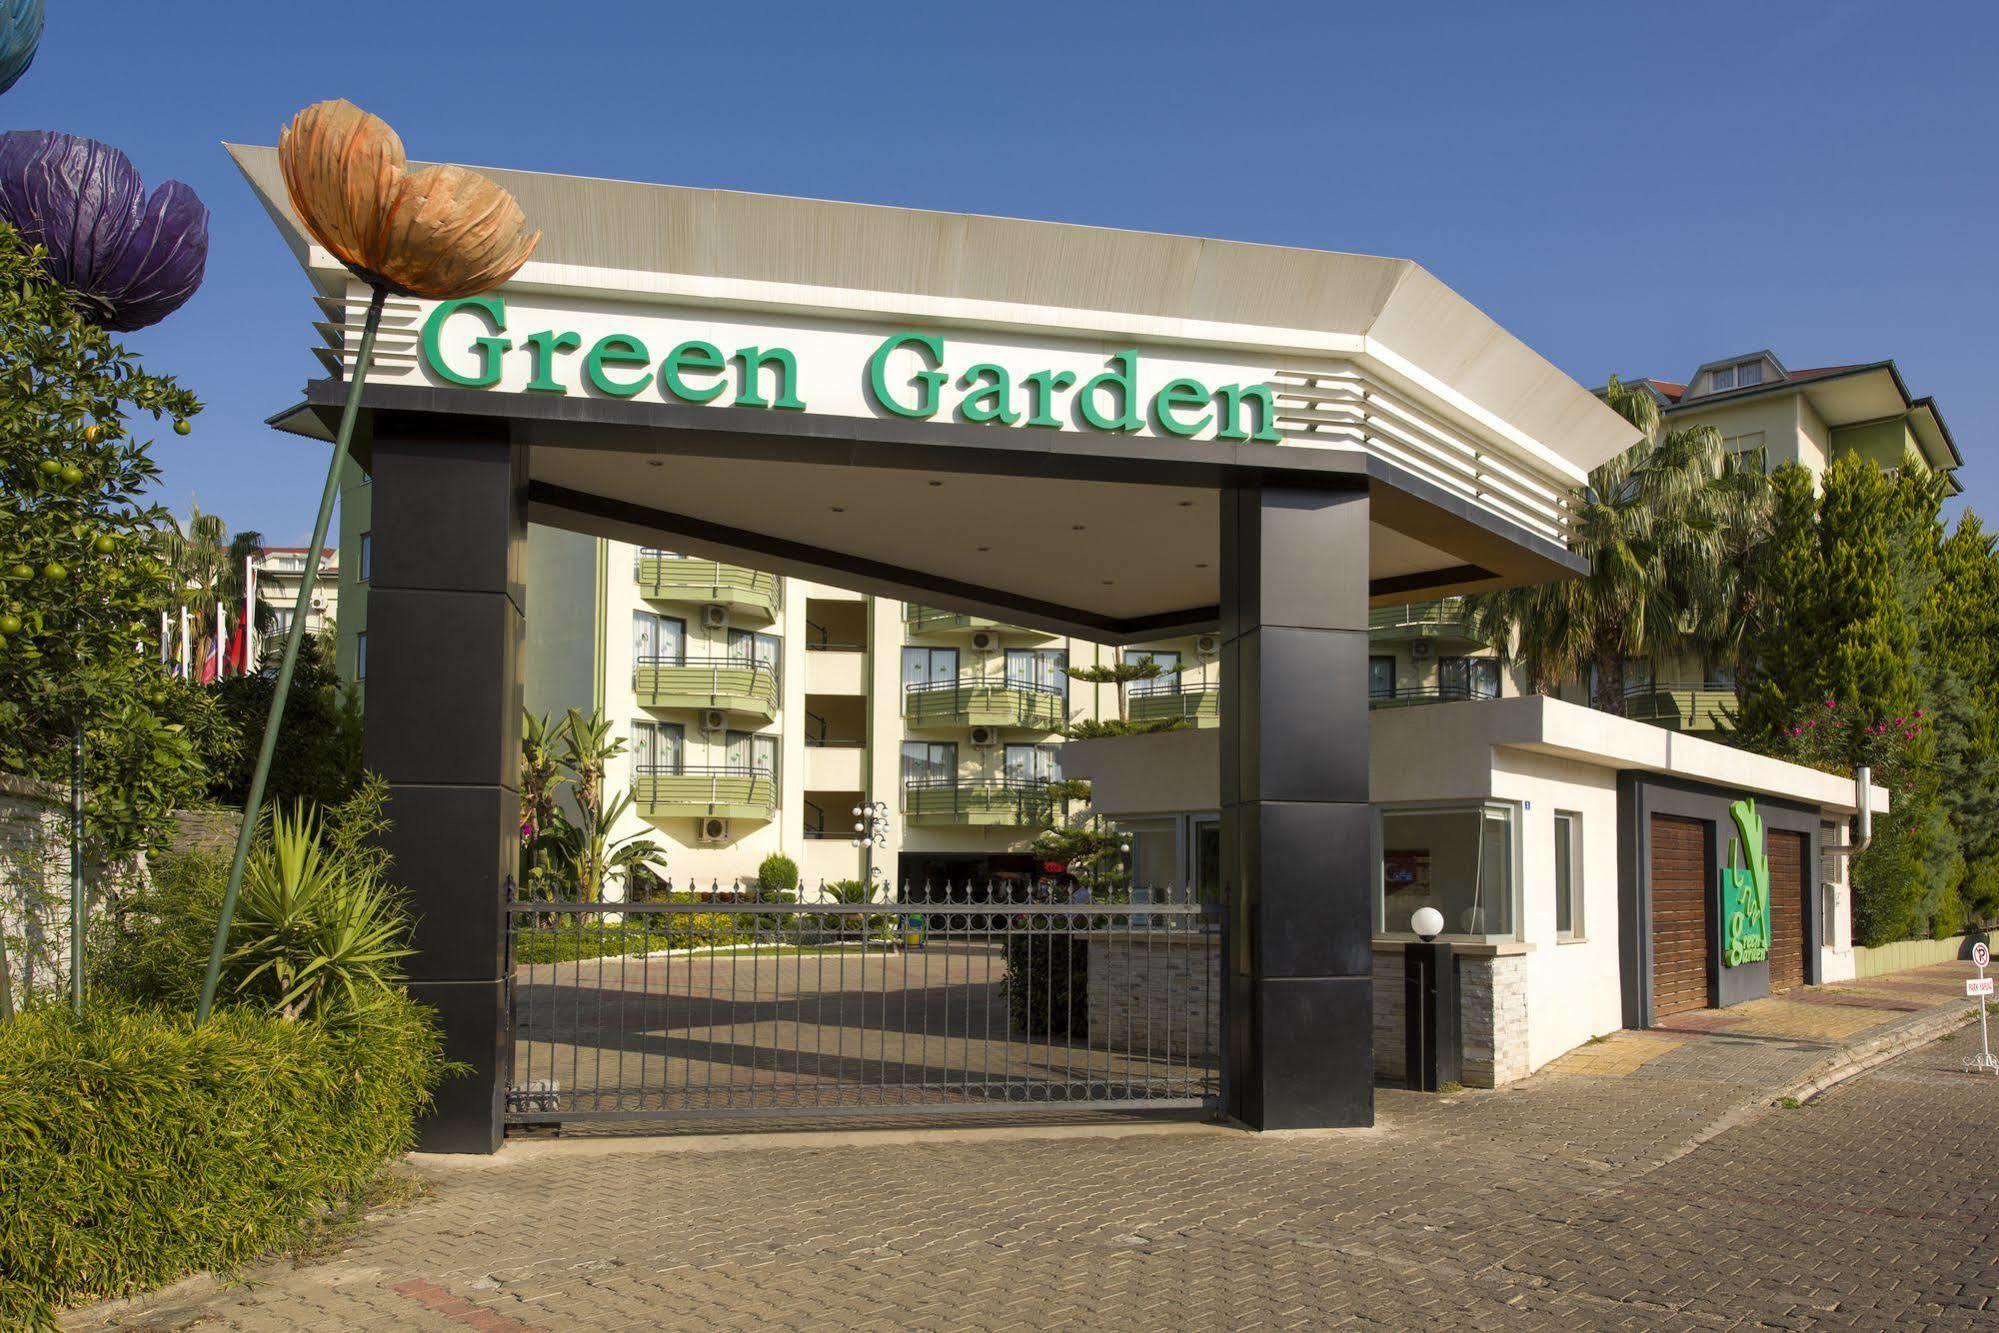 Отель Green Garden Resort Hotel 4. Грин Гарден отель Кольчугино. Green Garden Resort Аланья. Грин Гарден Резорт отель 4 Турция Аланья. Аланья green